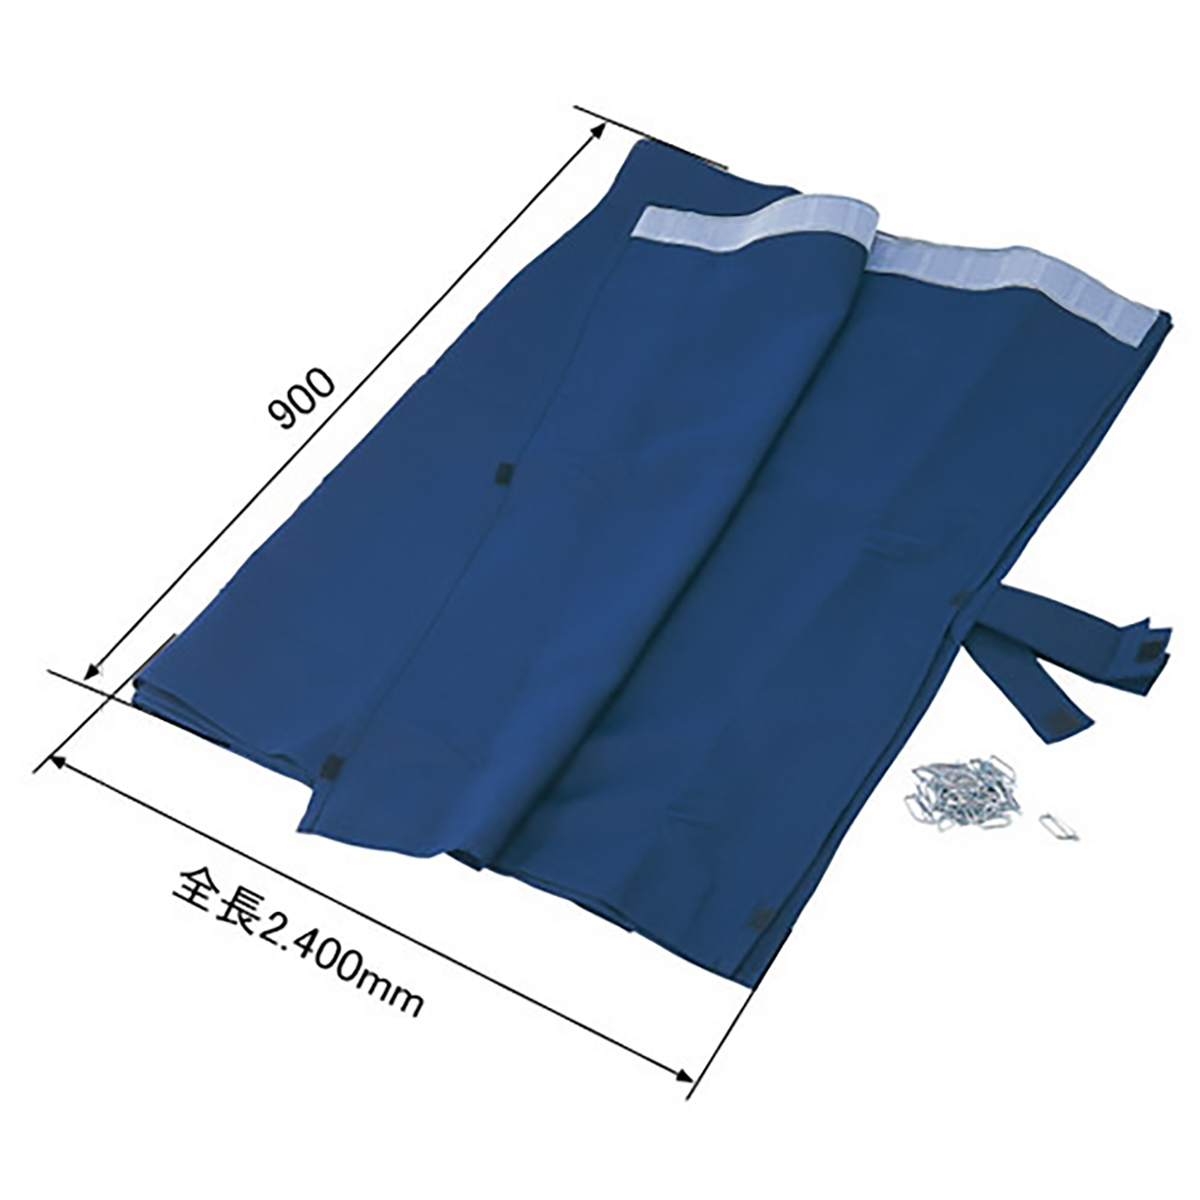 仮眠カーテン 2枚組 巾2400×高さ900mm